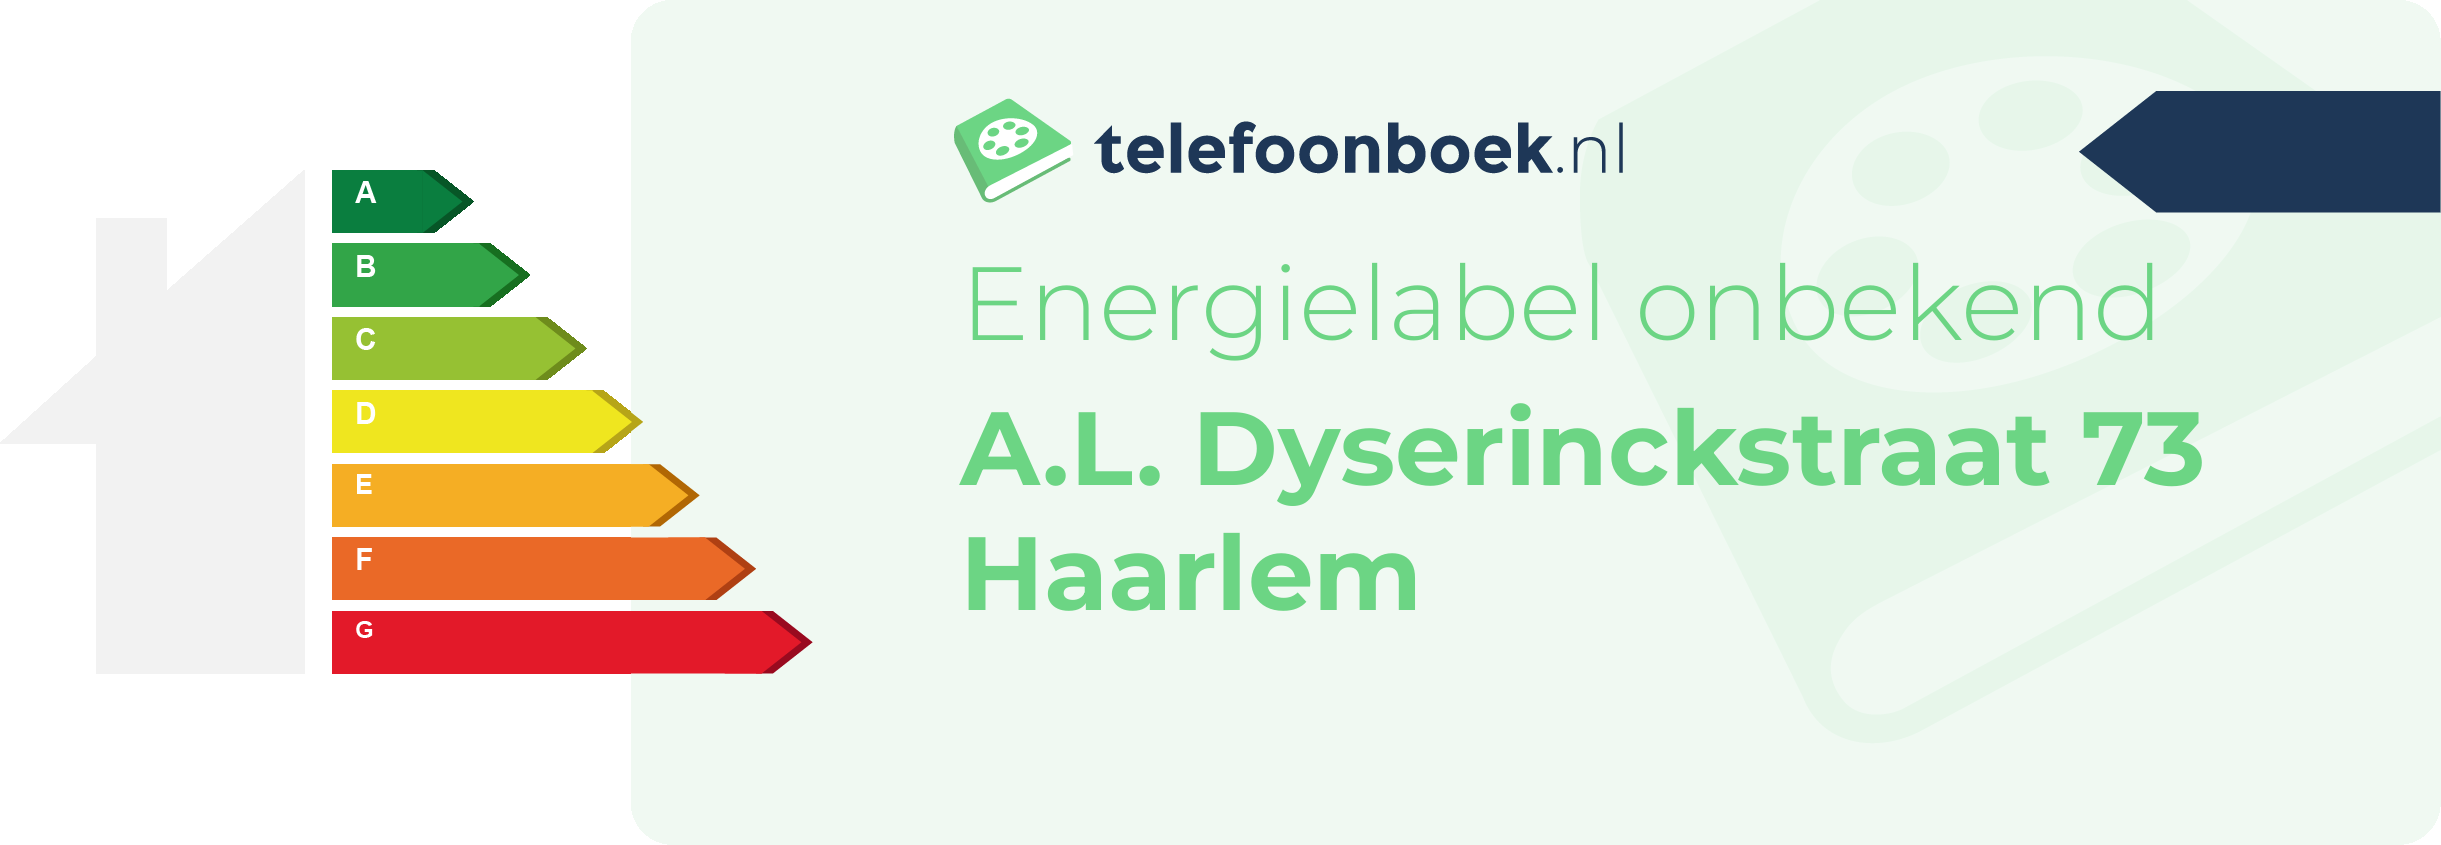 Energielabel A.L. Dyserinckstraat 73 Haarlem